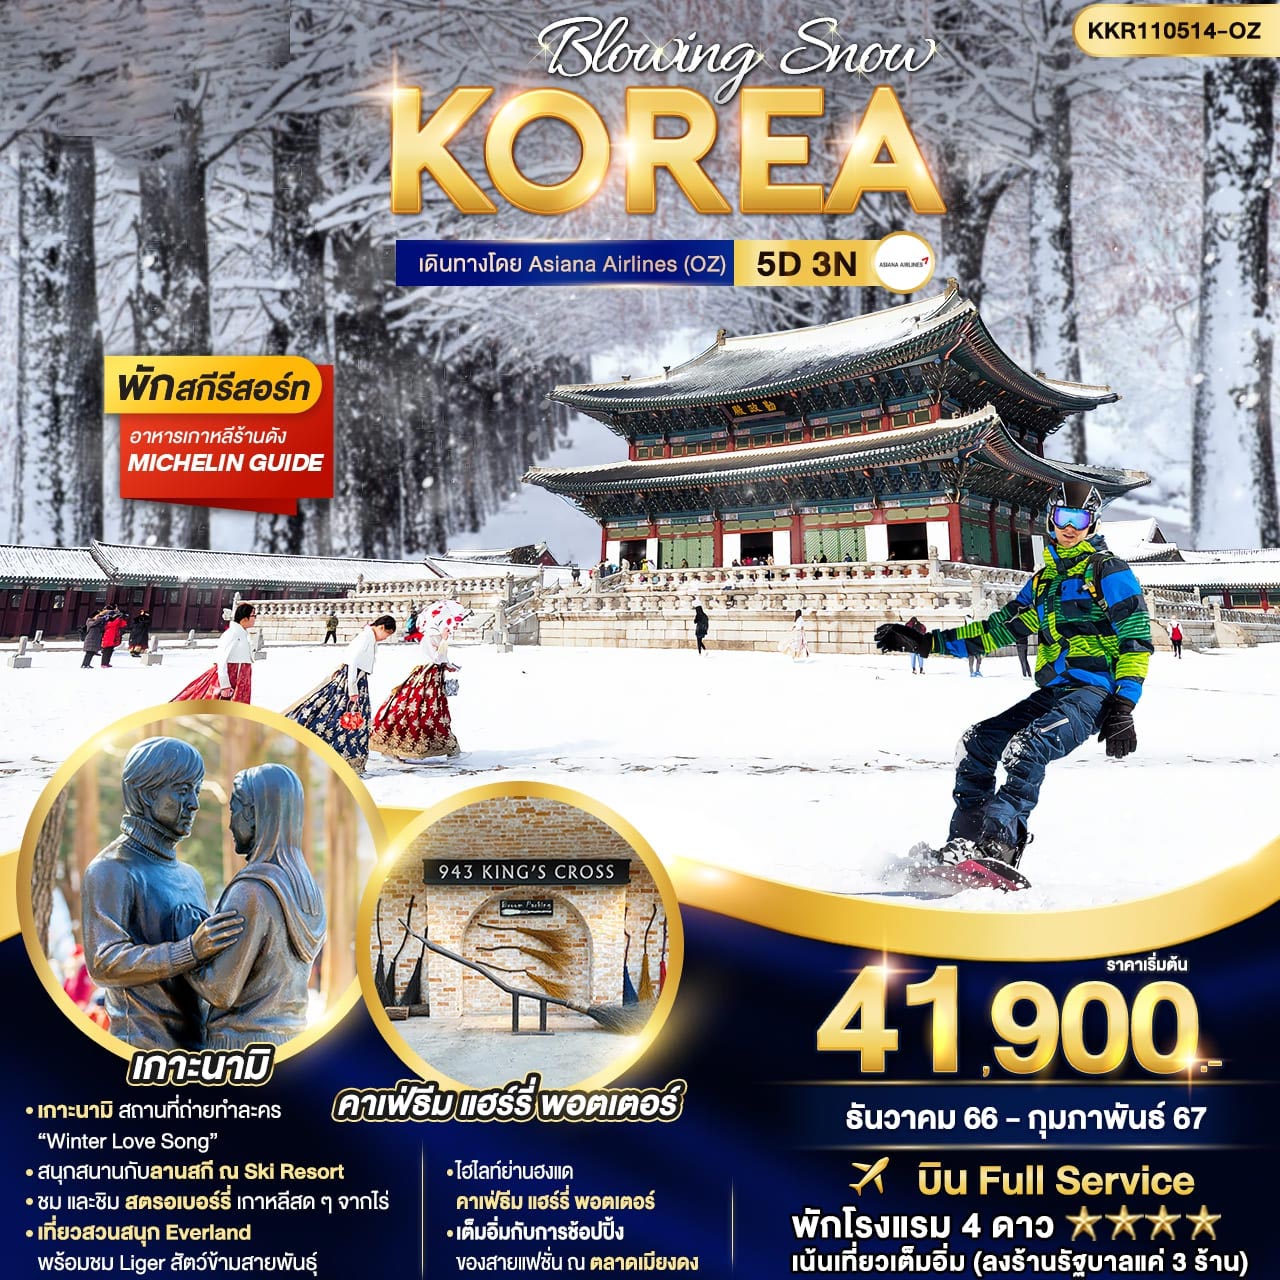 ทัวร์เกาหลี BLOWING SNOW KOREA 5วัน 3คืน